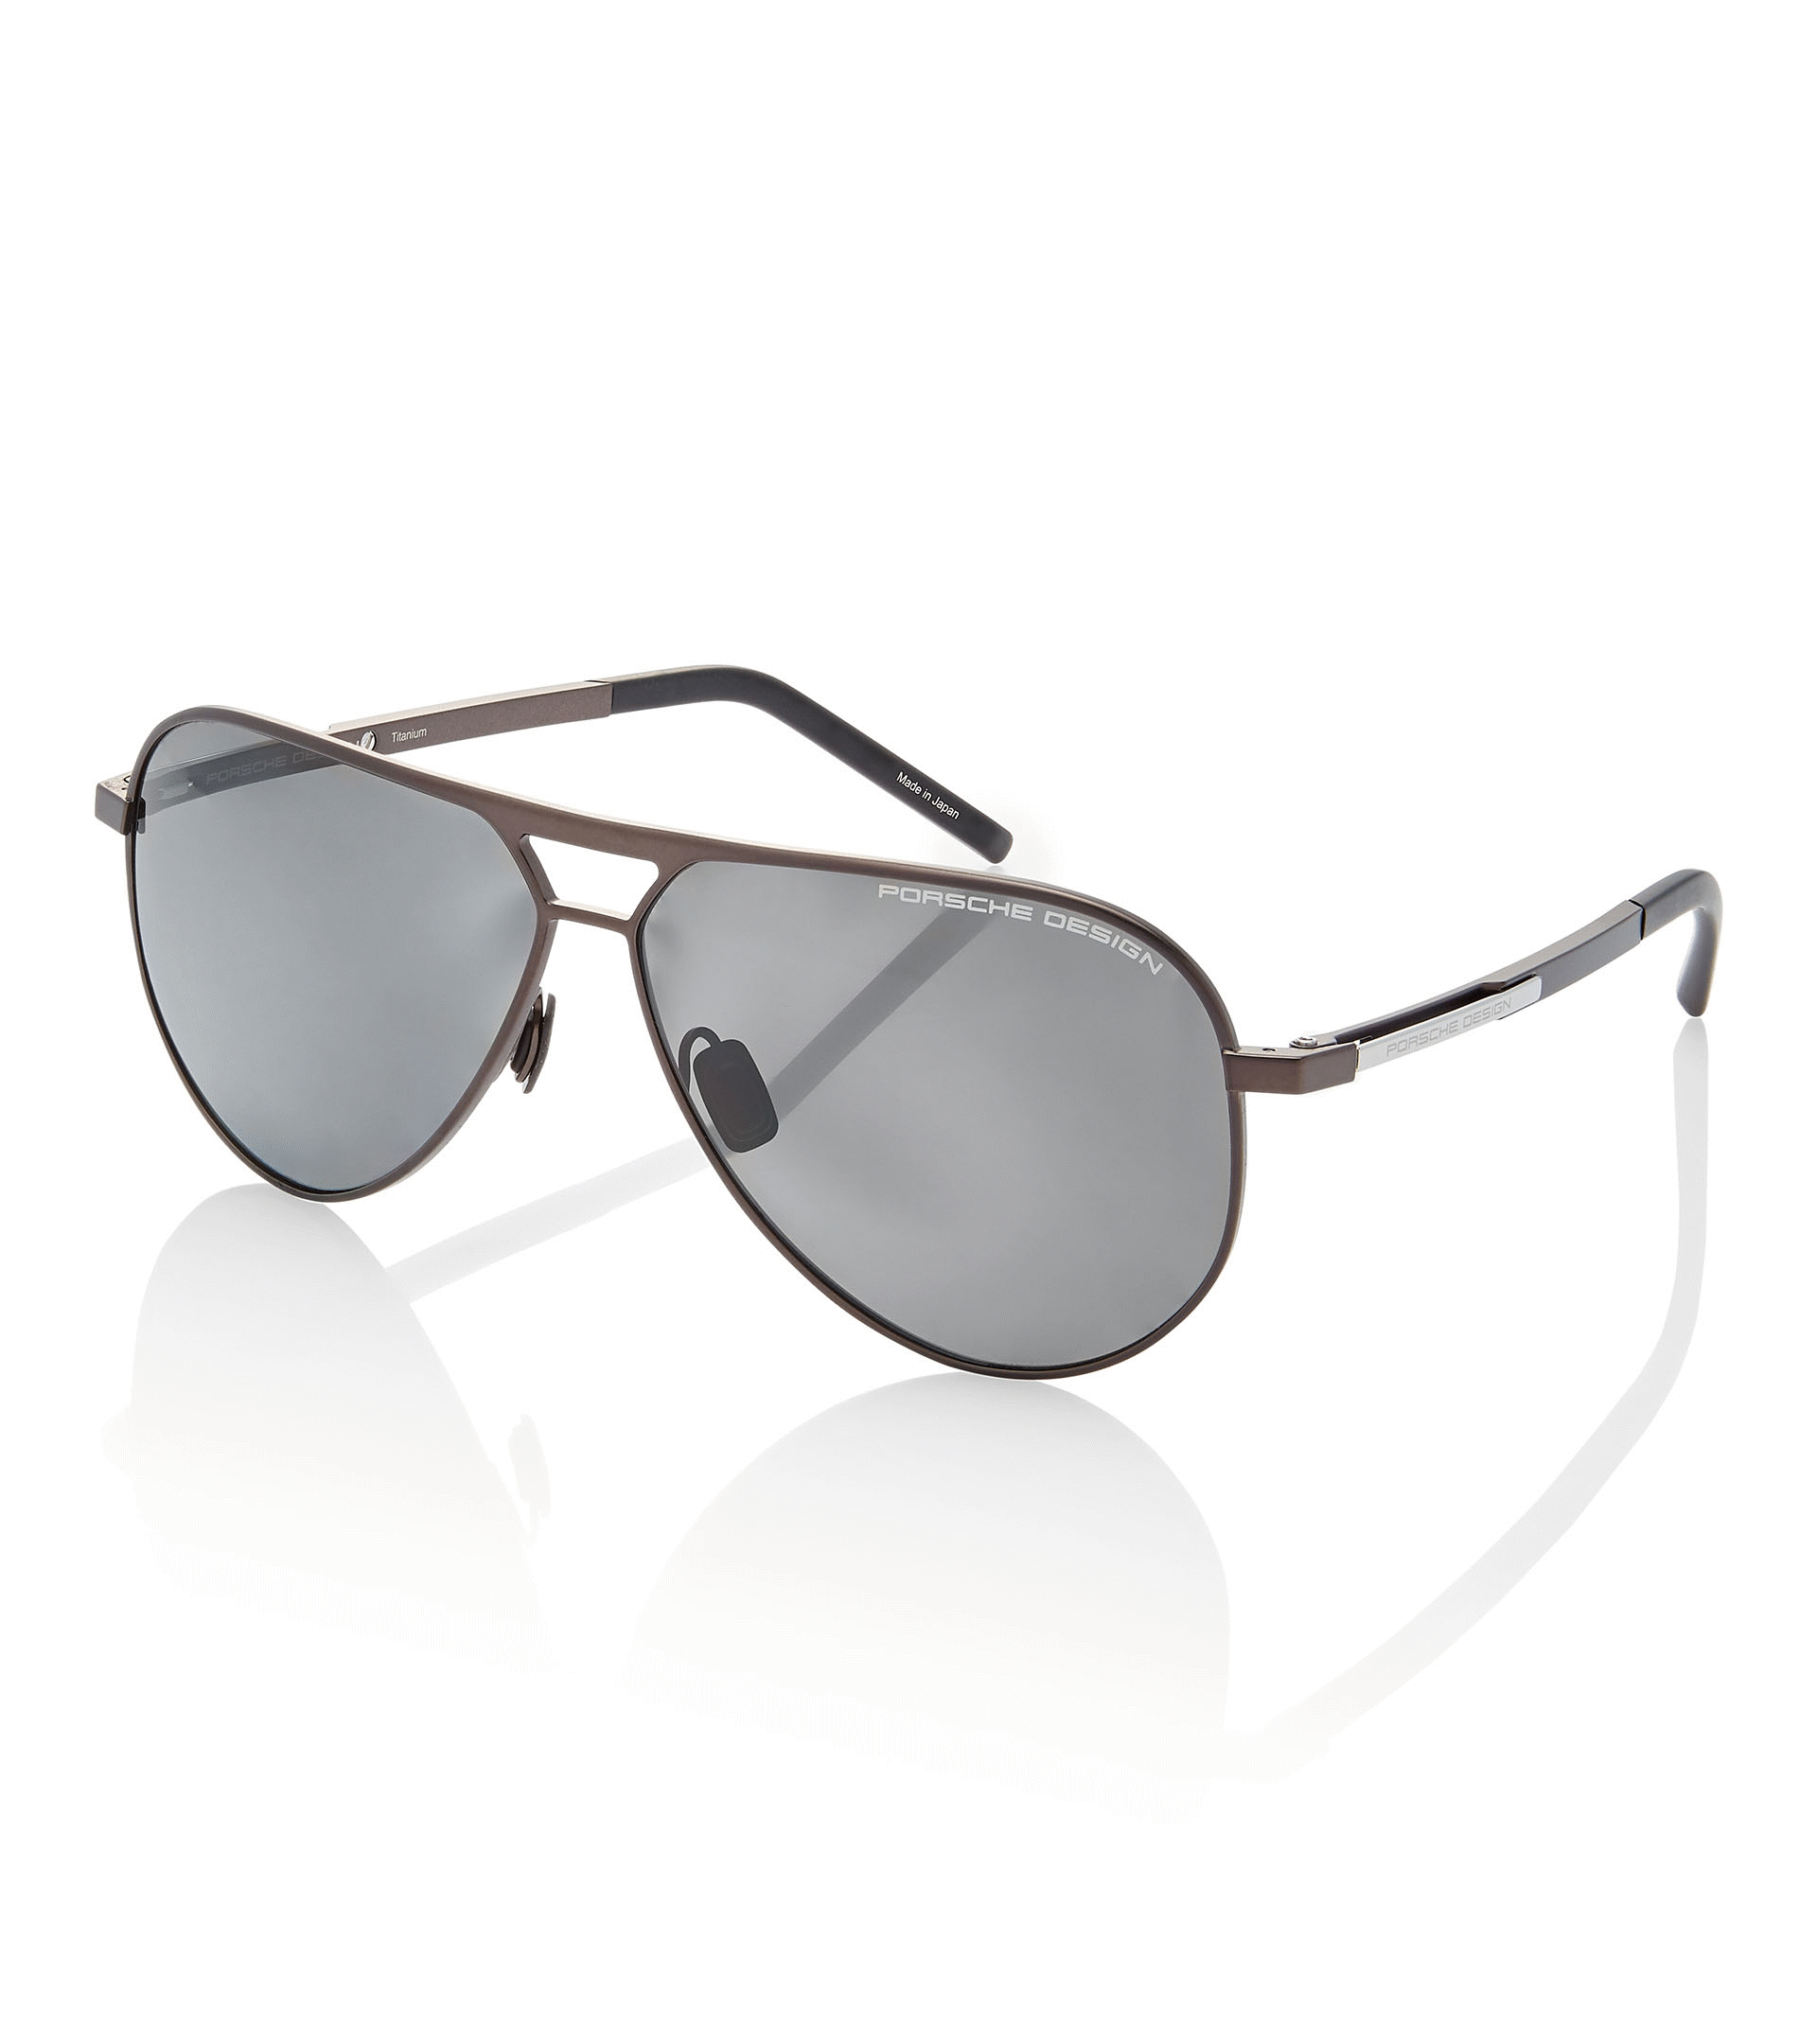 Sunglasses Porsche Design P8649 F